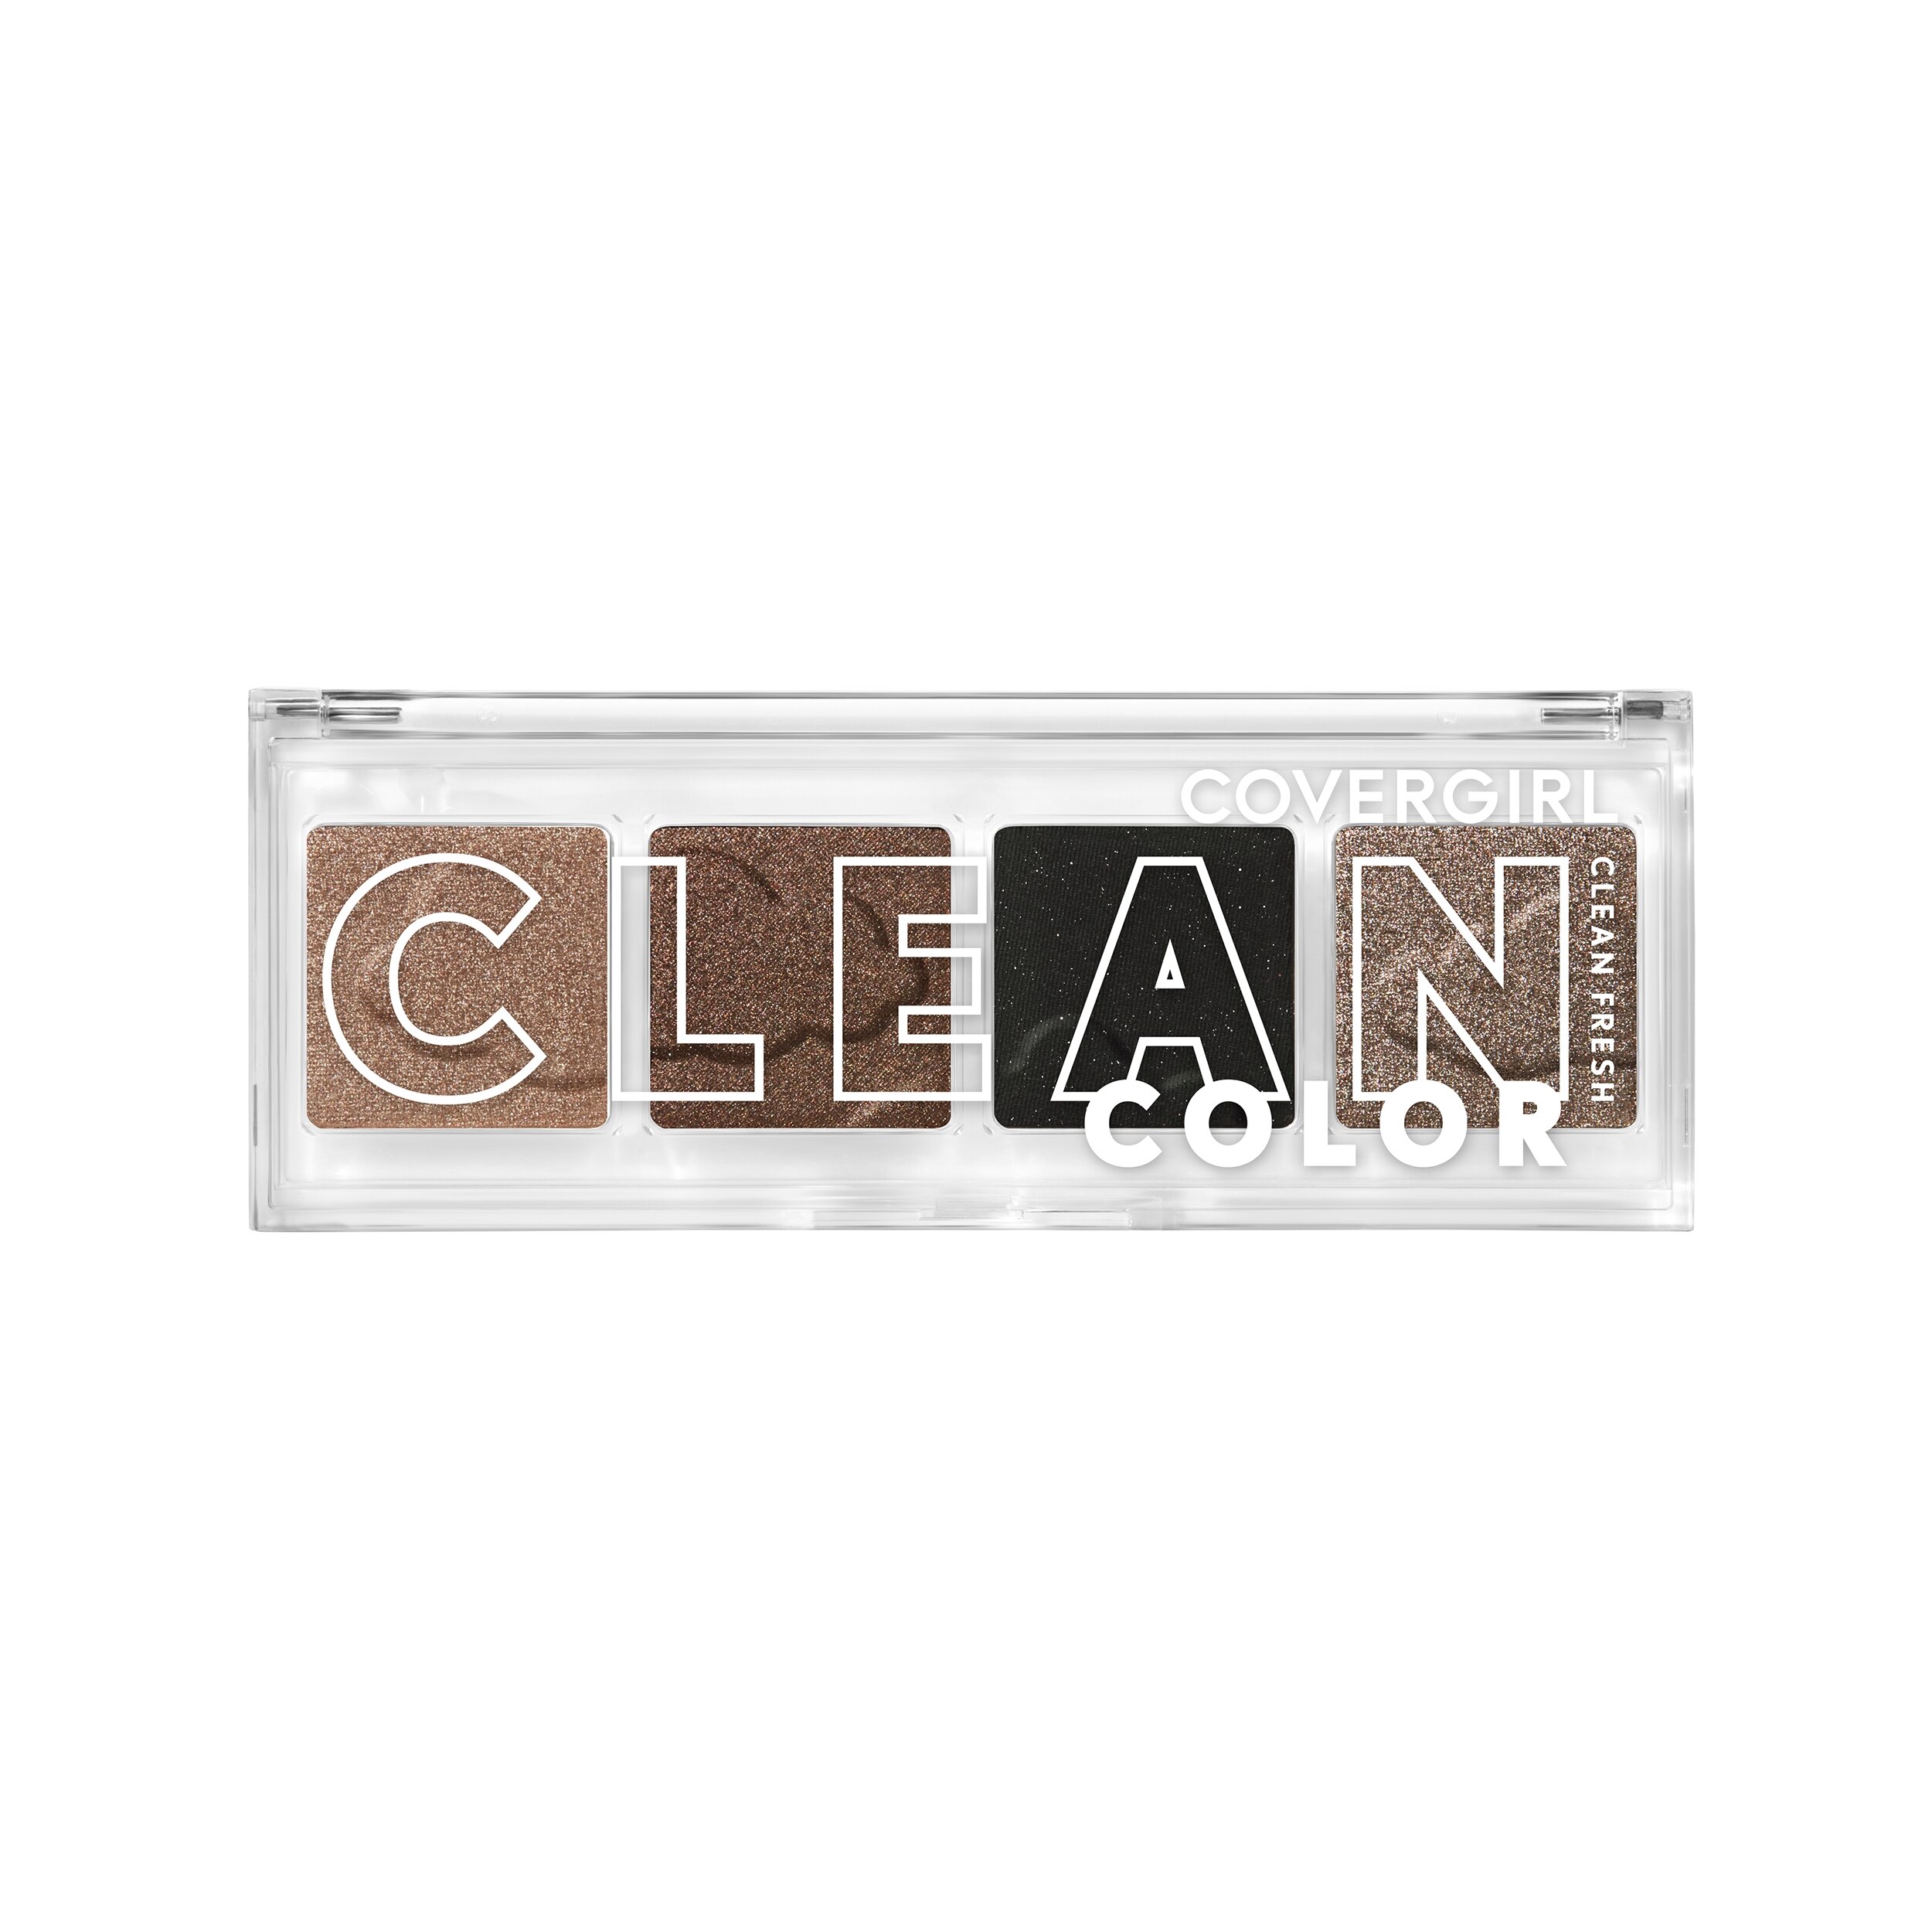 COVERGIRL Clean Fresh Clean Color Eyeshadow